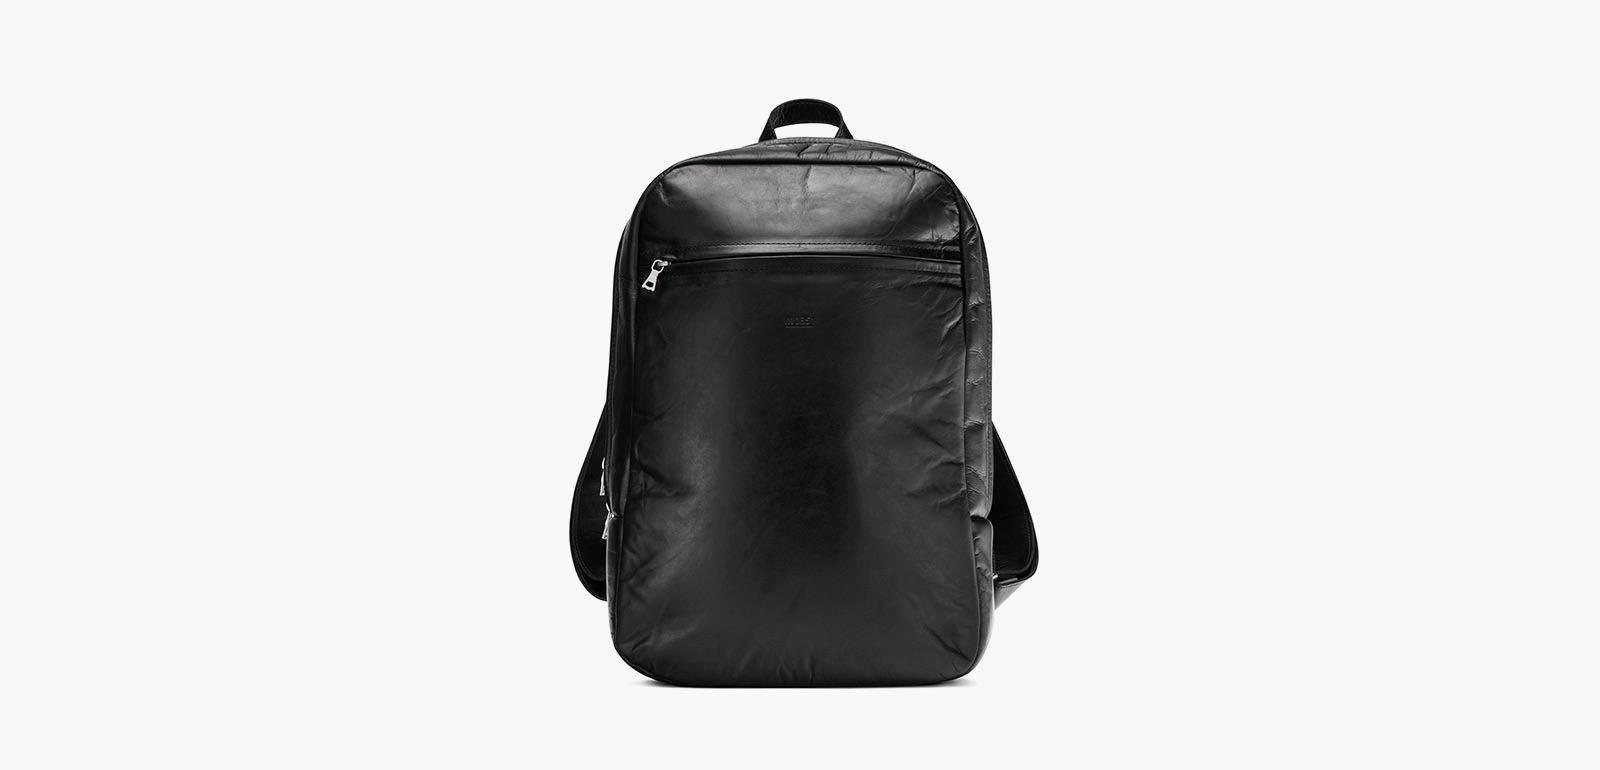 M0851 Urban Backpack